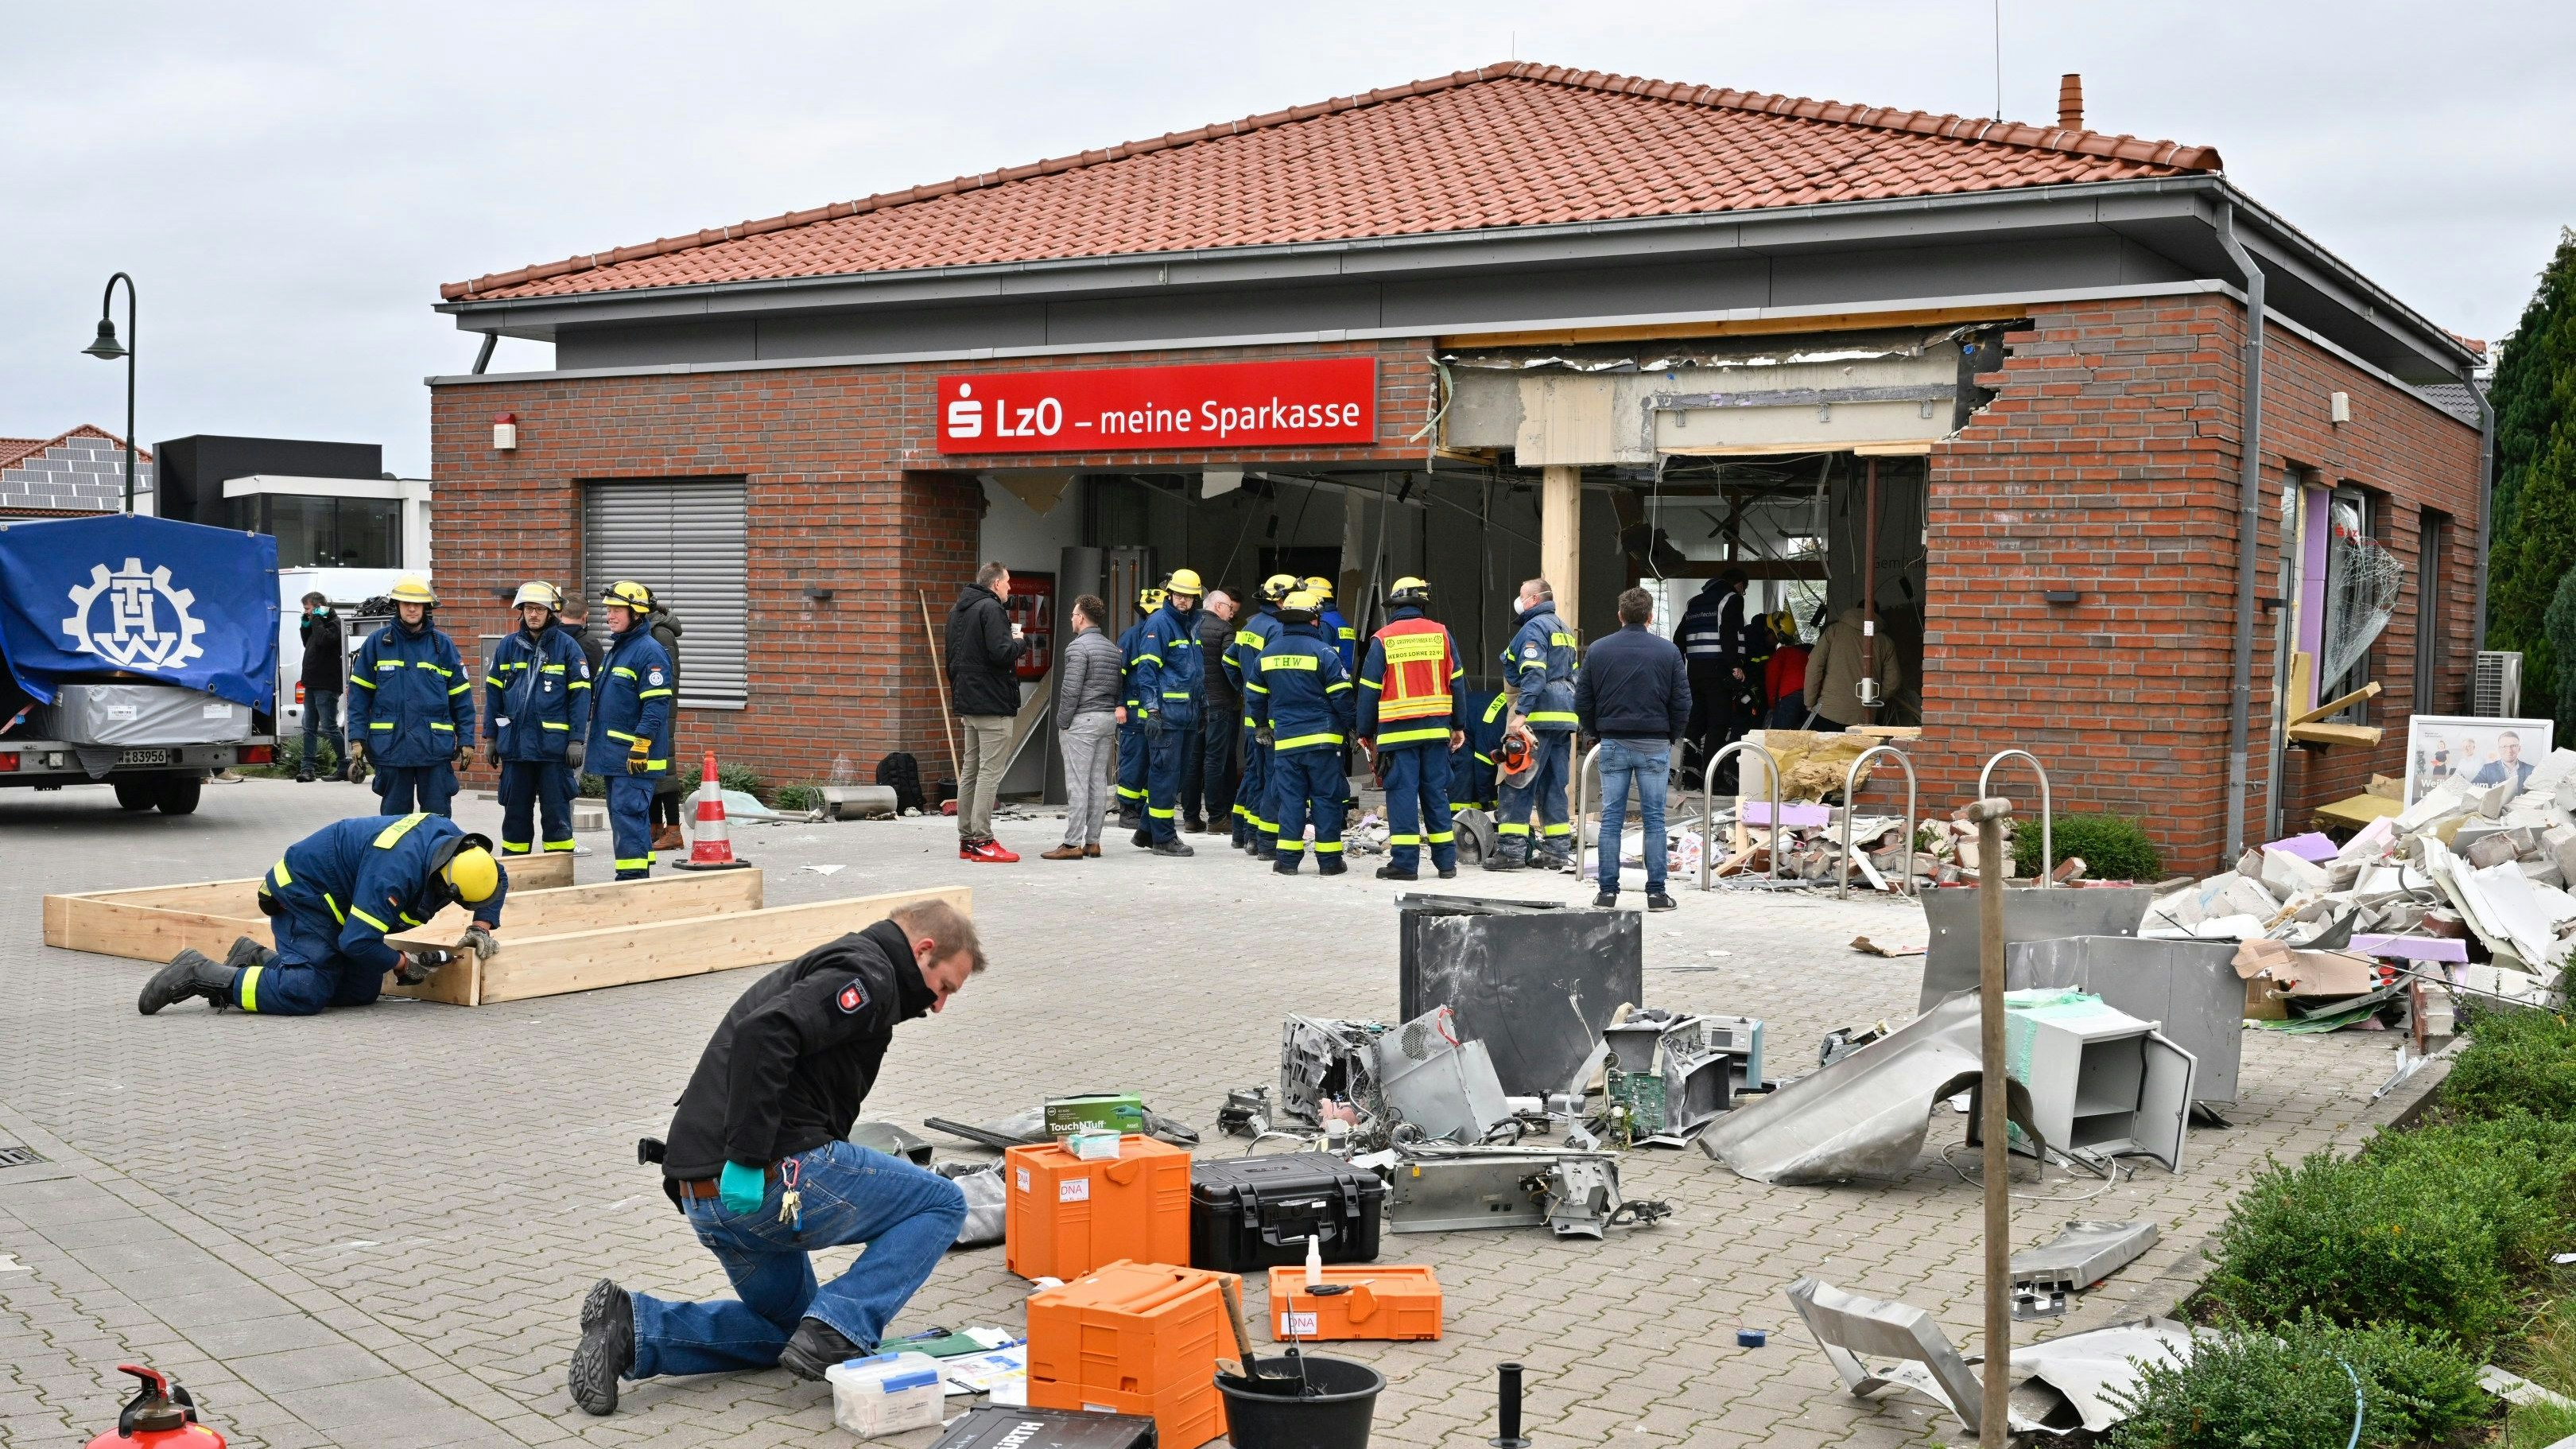 THW und Polizei bei der Arbeit: Vorne sichert ein Kripo-Beamter Spuren, dahinter bewahren die Rettungskräfte das Gebäude vor dem Einsturz. Foto: M. Niehues